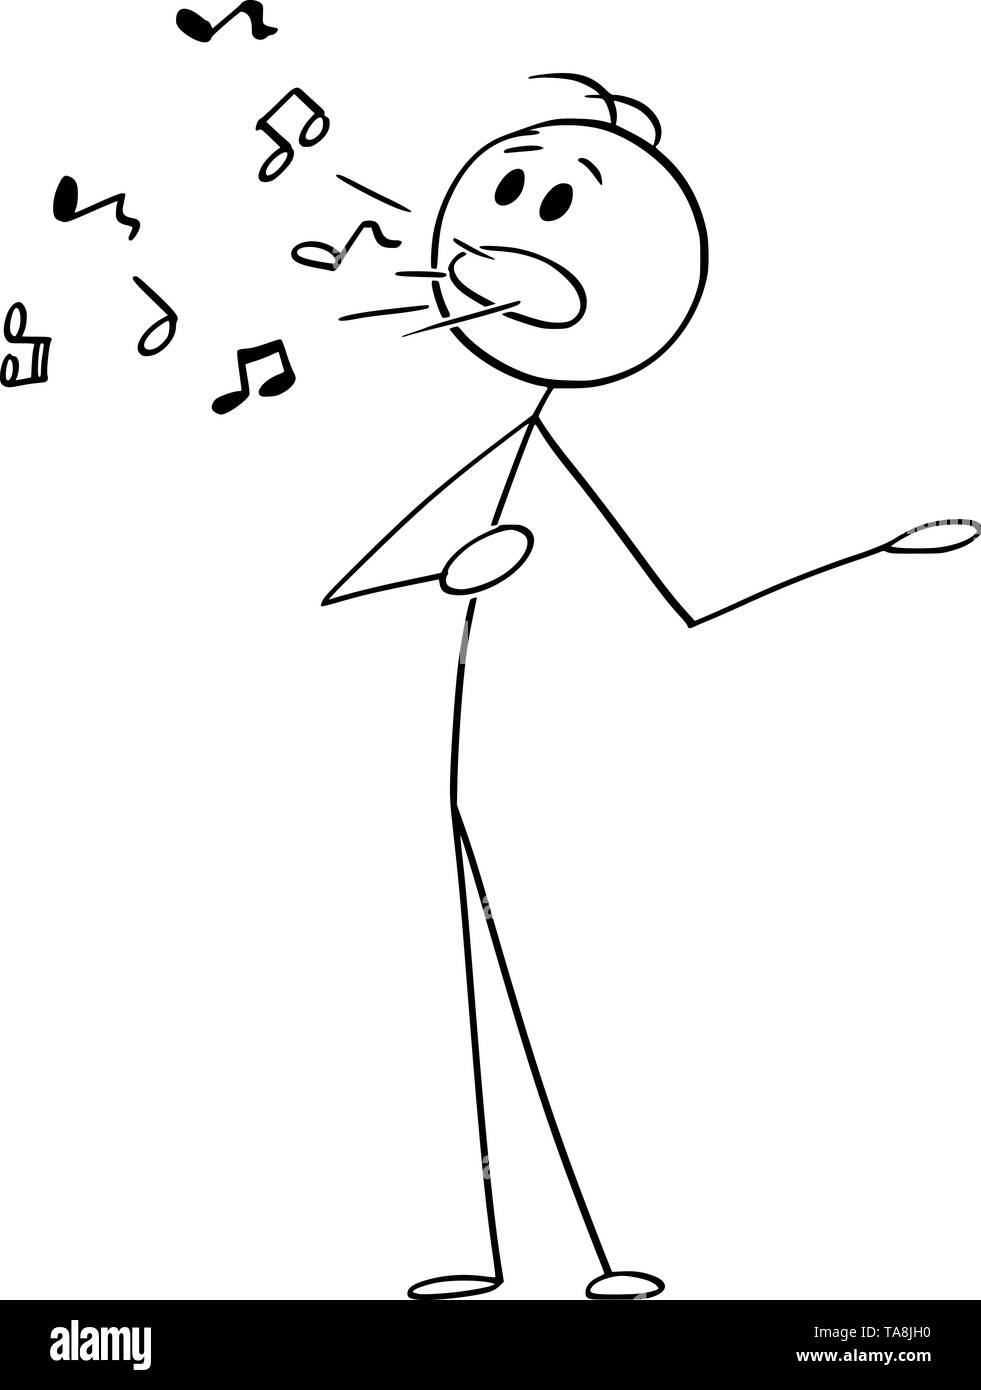 Vector cartoon stick figura disegno illustrazione concettuale dell'uomo o cantante cantando con note musicali provenienti dalla sua bocca. Illustrazione Vettoriale